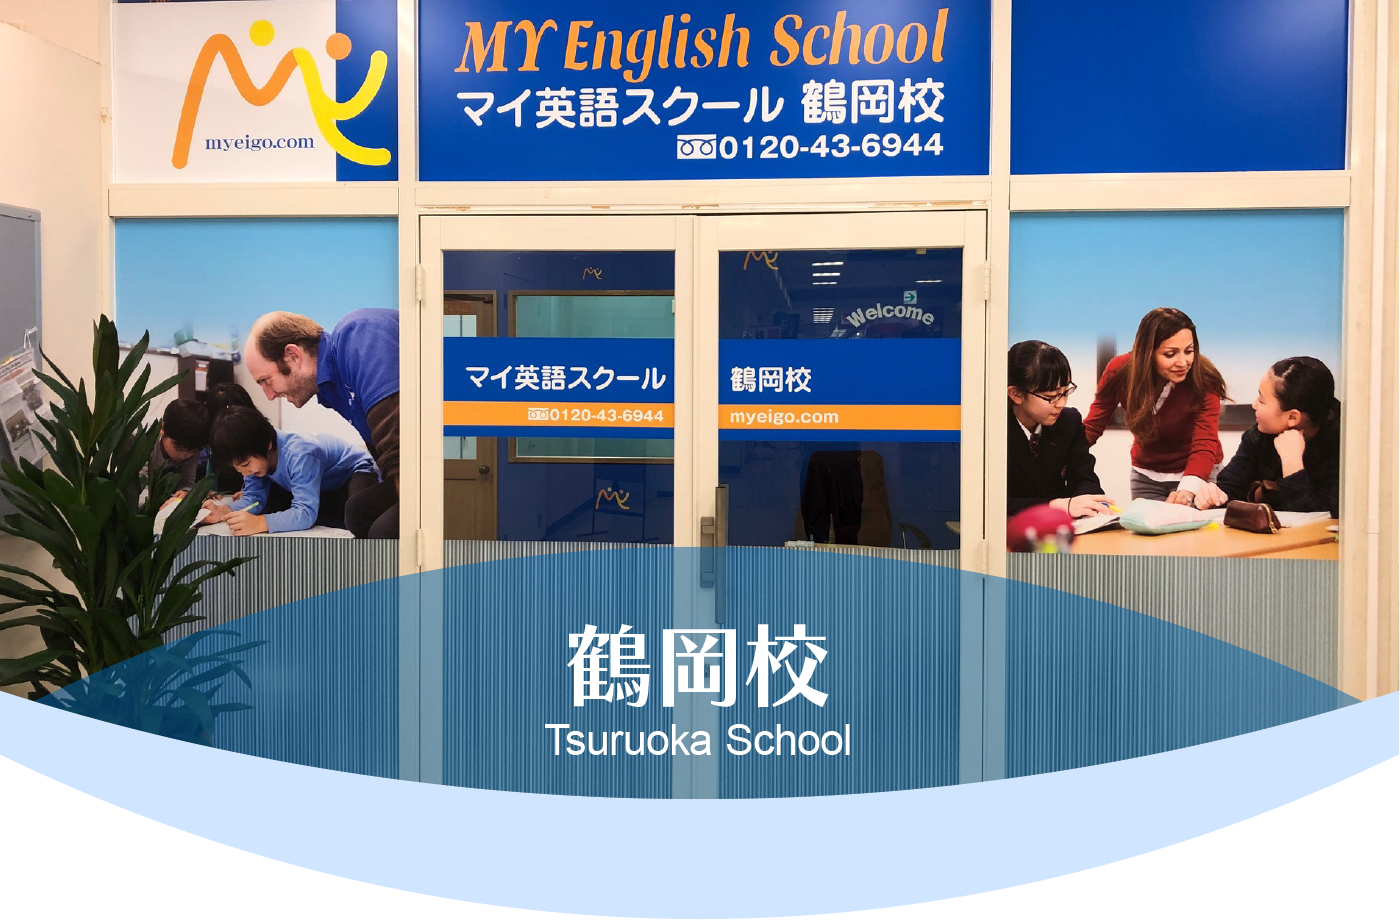 鶴岡校 School Information